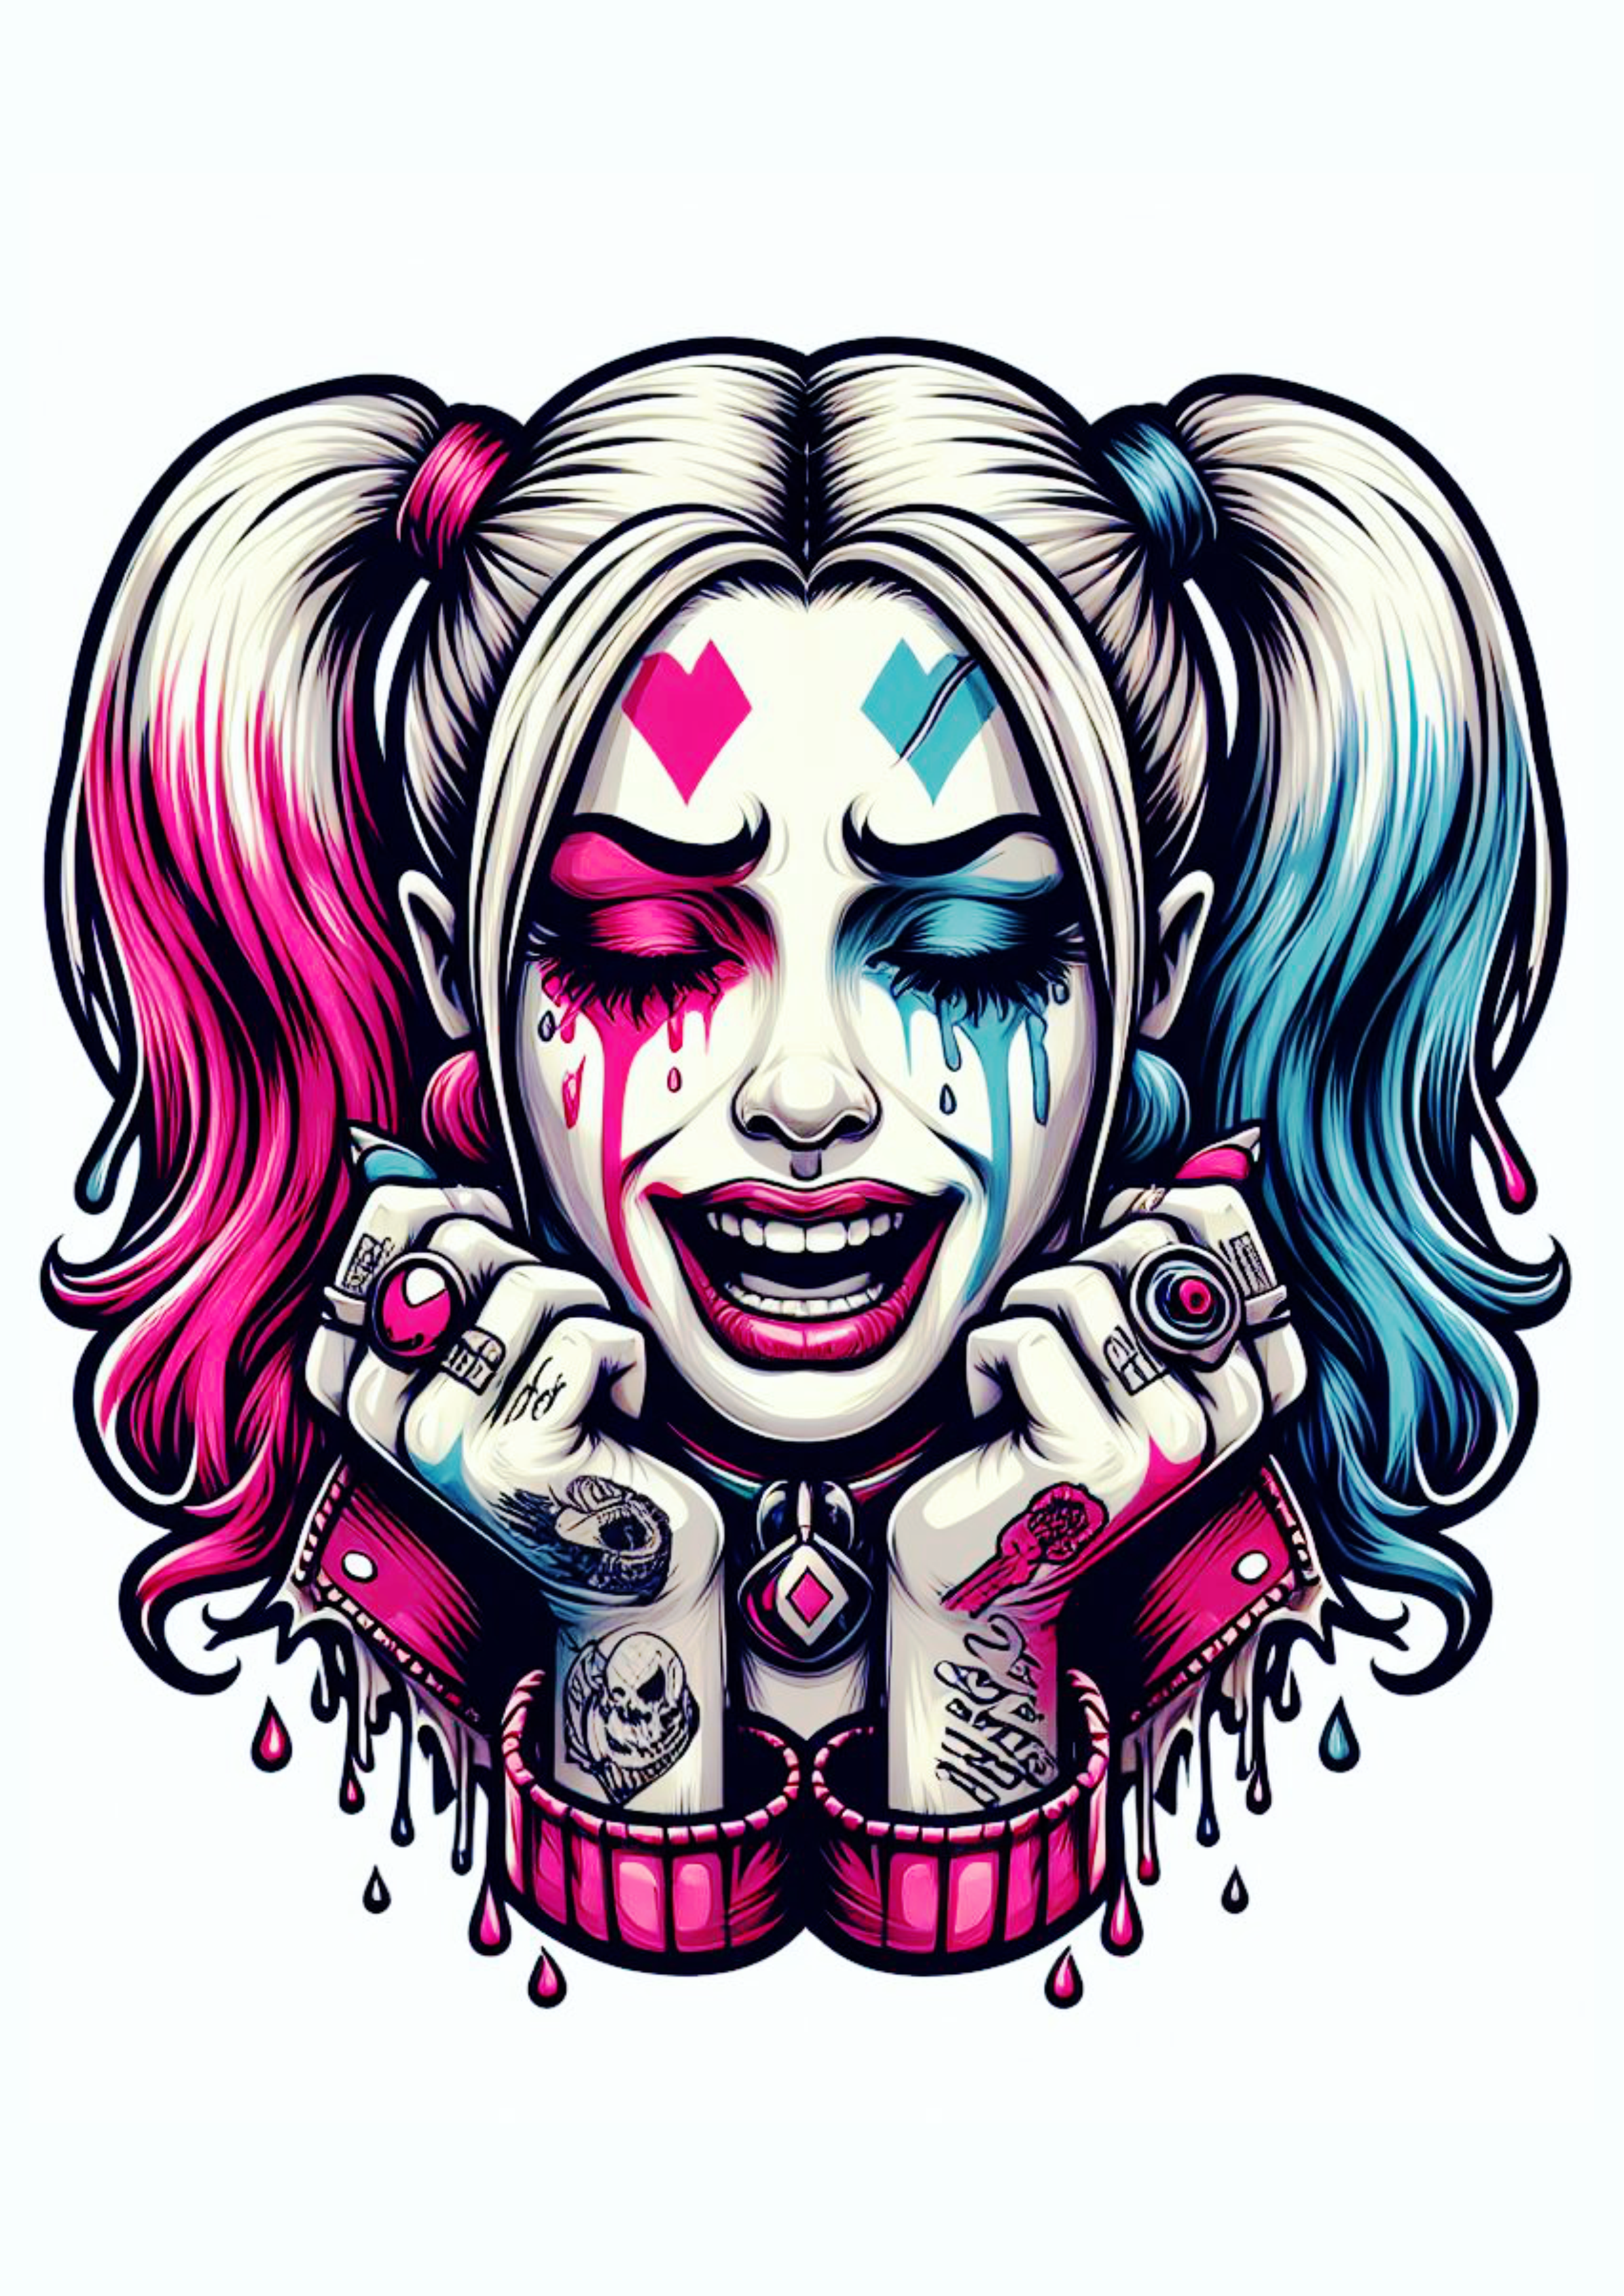 Arlequina chorando desenho colorida para tatuagem Harley Quinn desespero psicopata perturbadora png